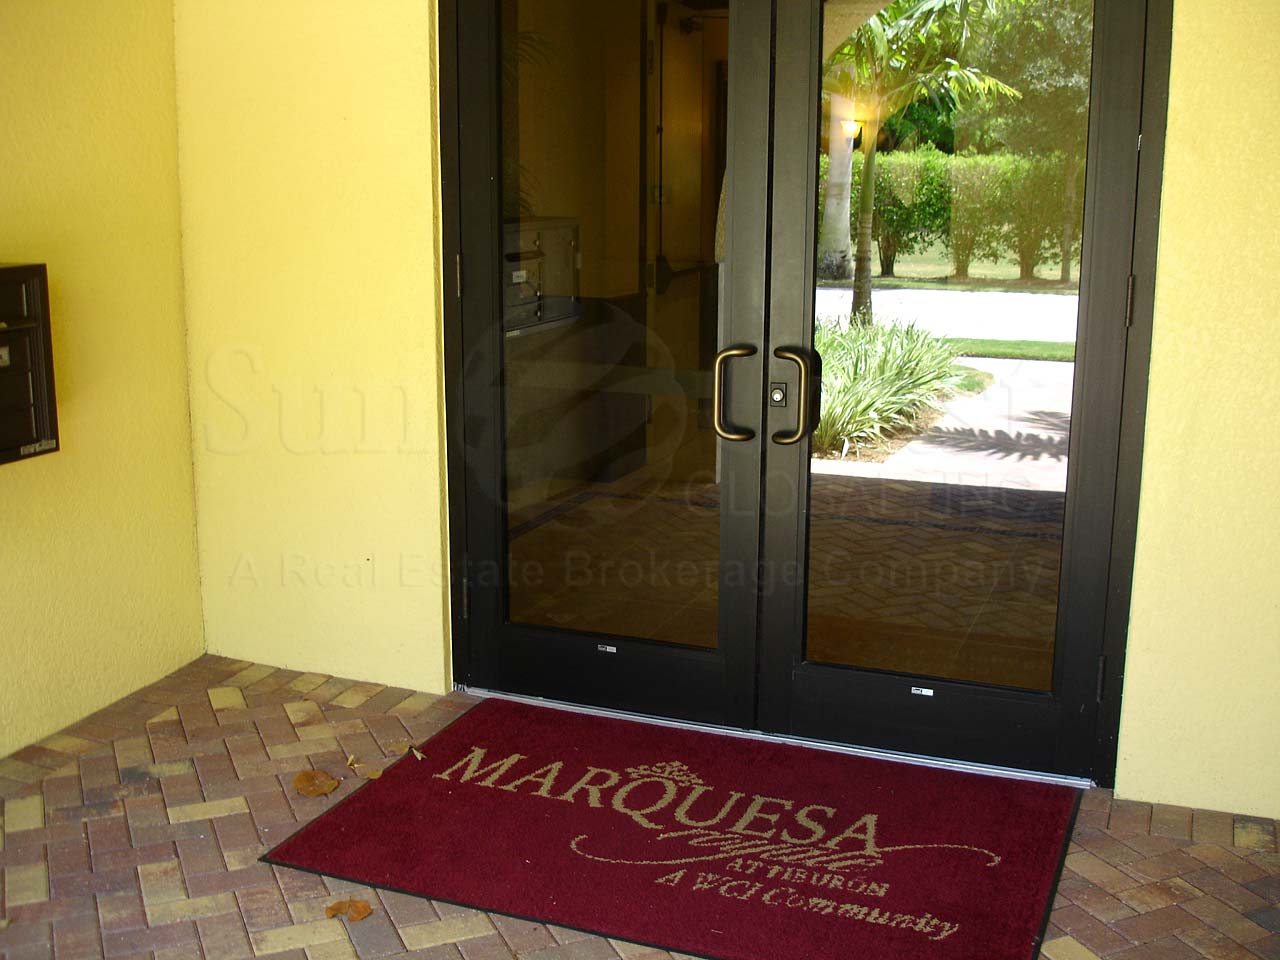 Marquesa Royale Entrance